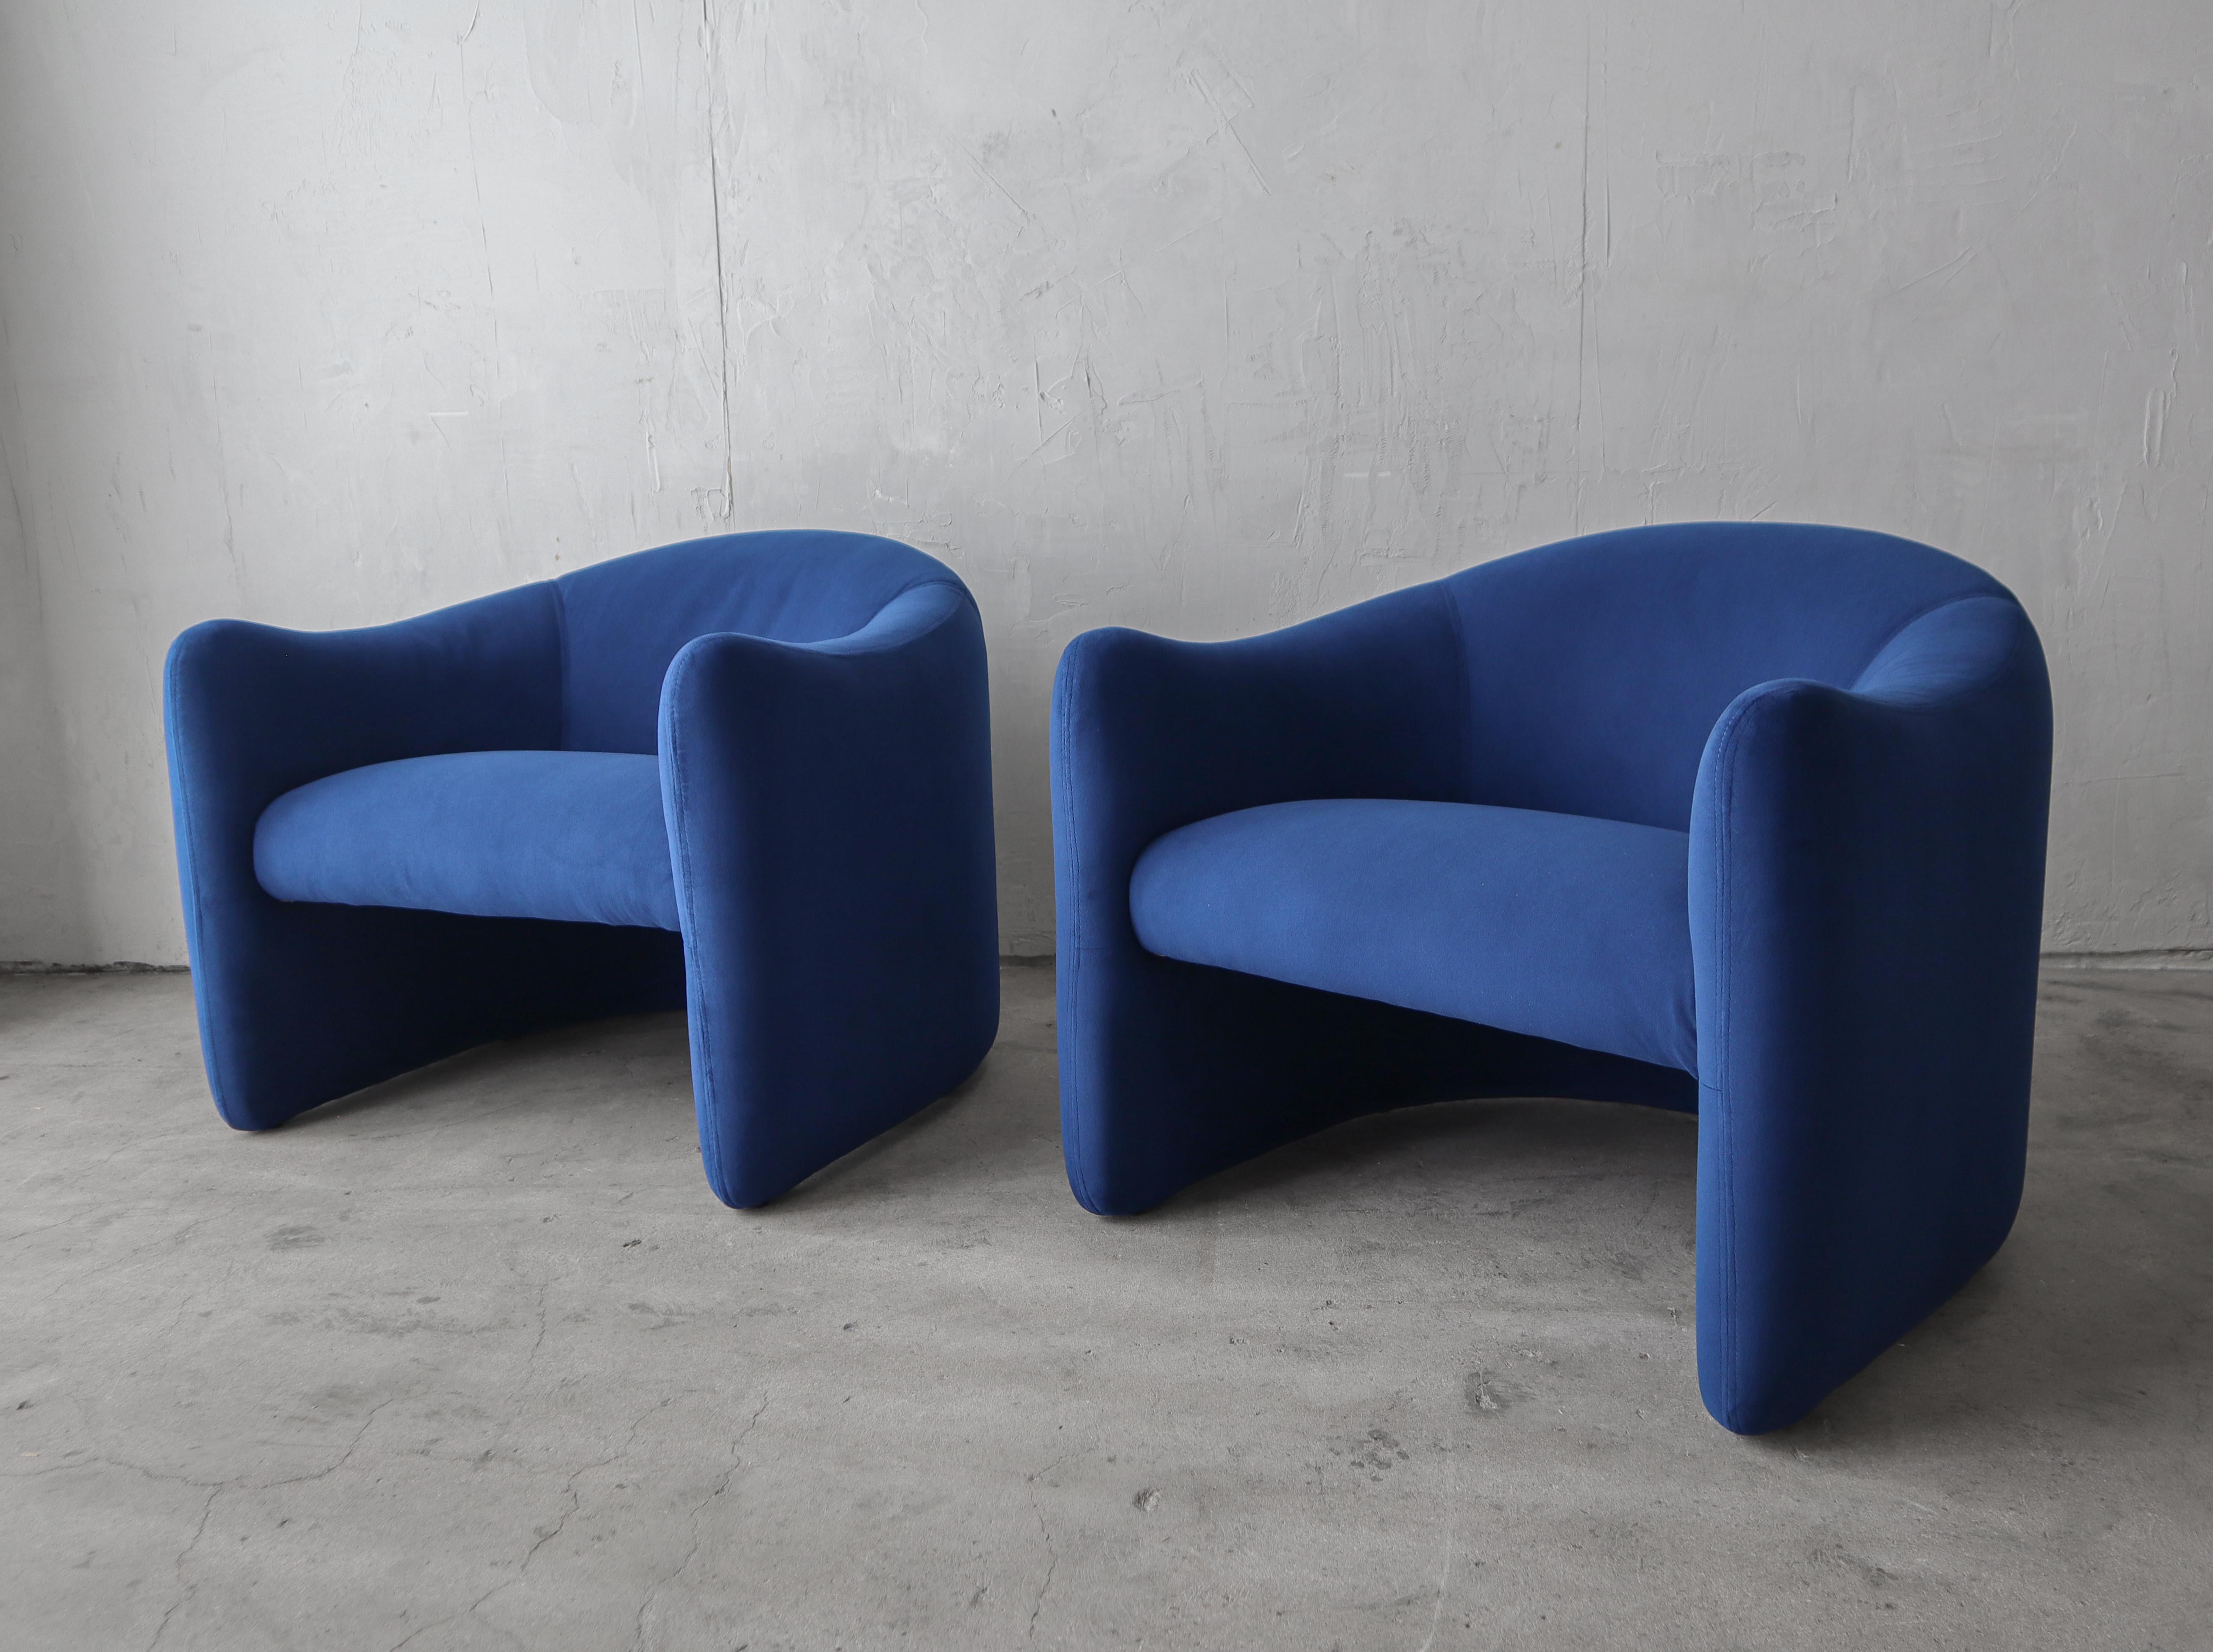 Schönes Paar Post Modern Lounge Chairs von Jules Heumann für Metropolitan Furniture.  Die Linien dieser Stühle sind begehrenswert, so ein schönes Design. 

Der Stuhl wurde mit neuem dunkelblauem Samt bezogen.  Installationsbereit.